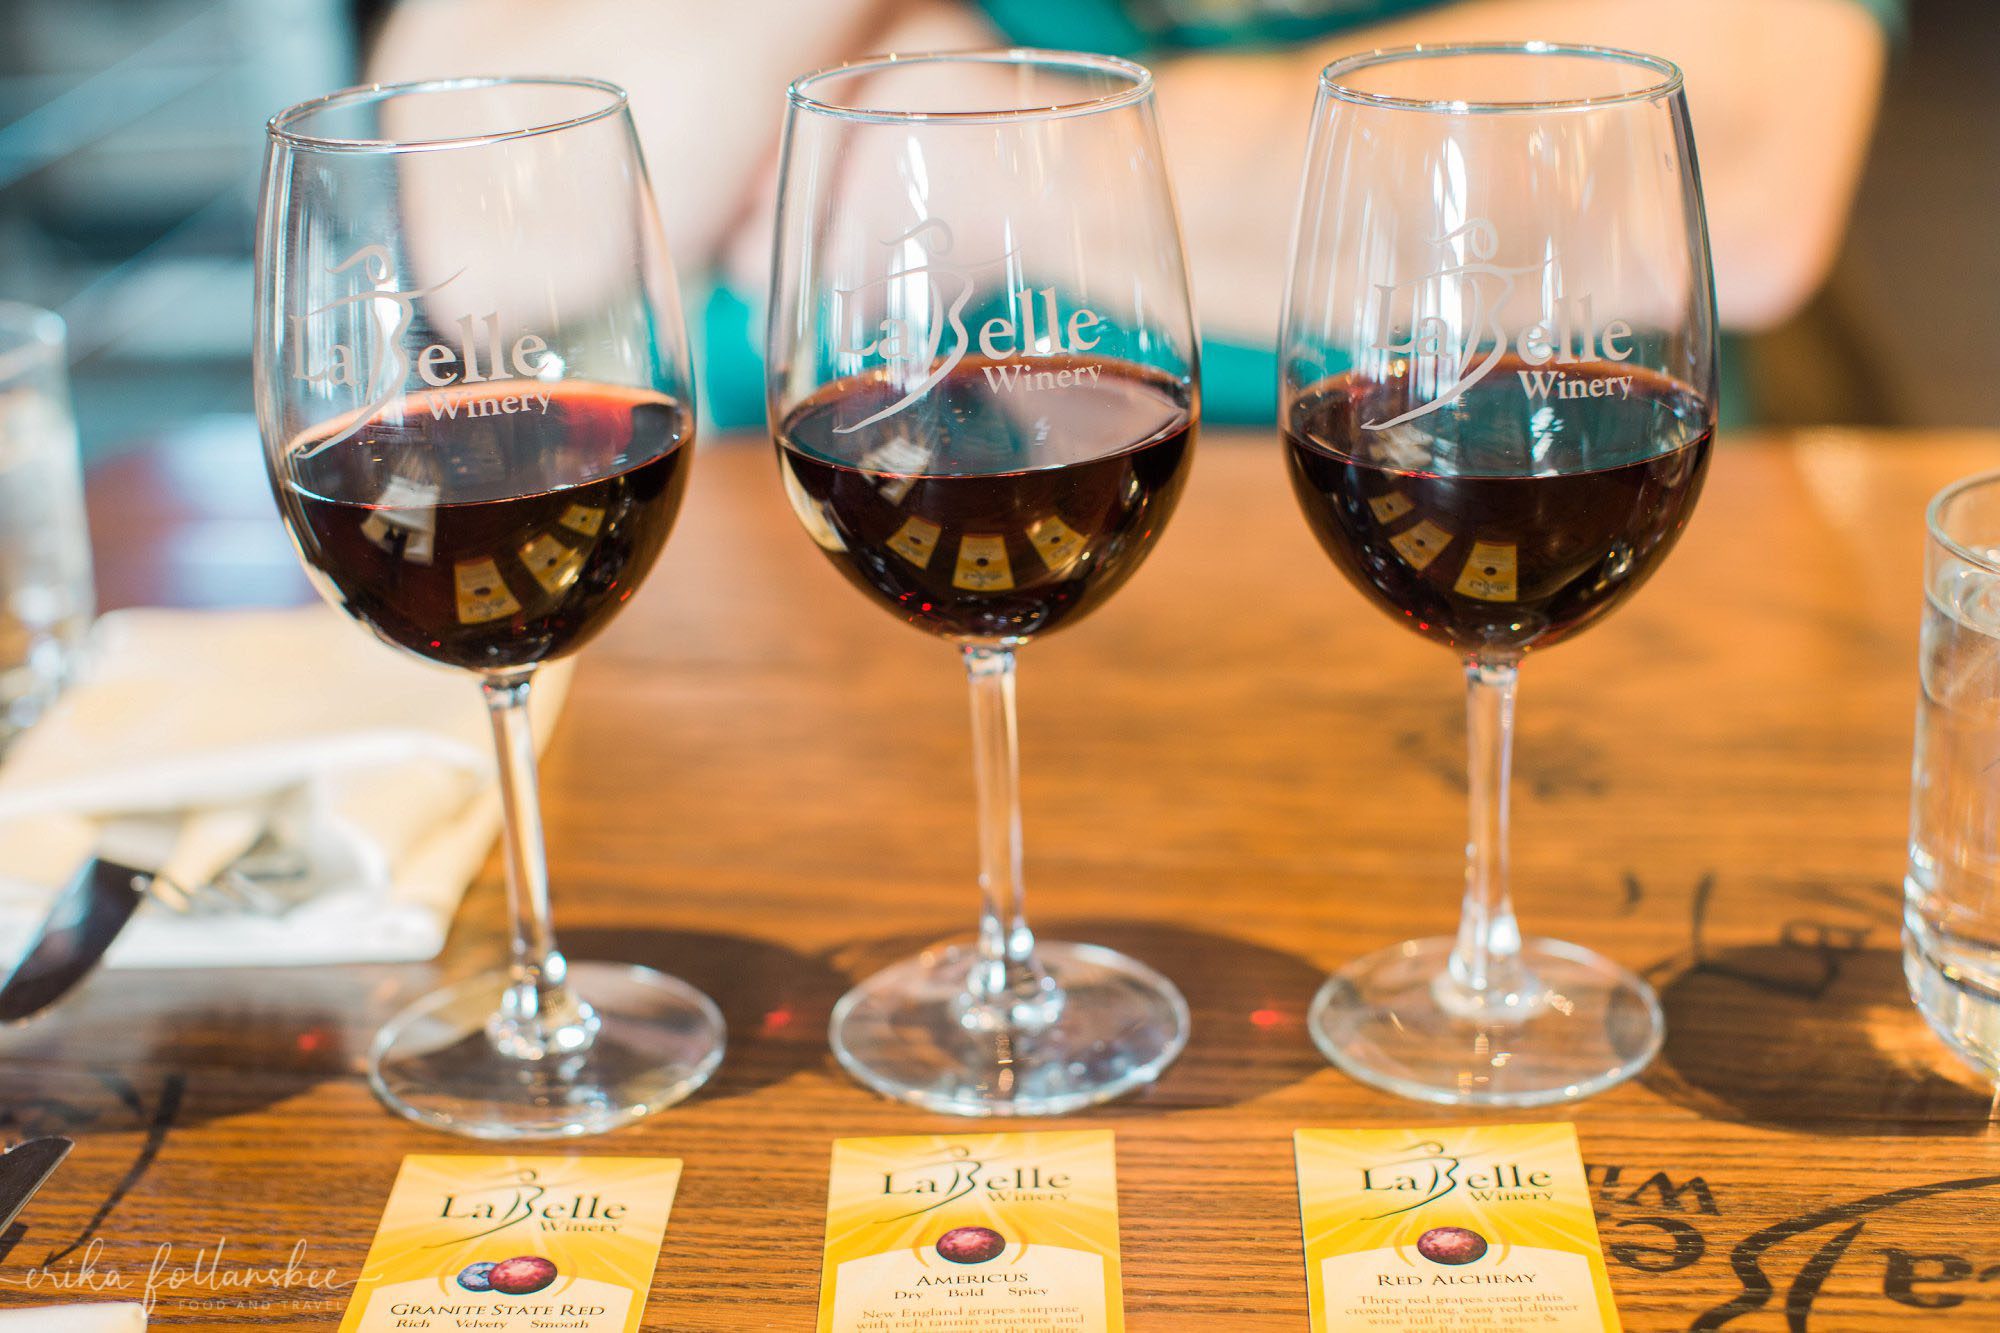 La Belle Winery red wine flight